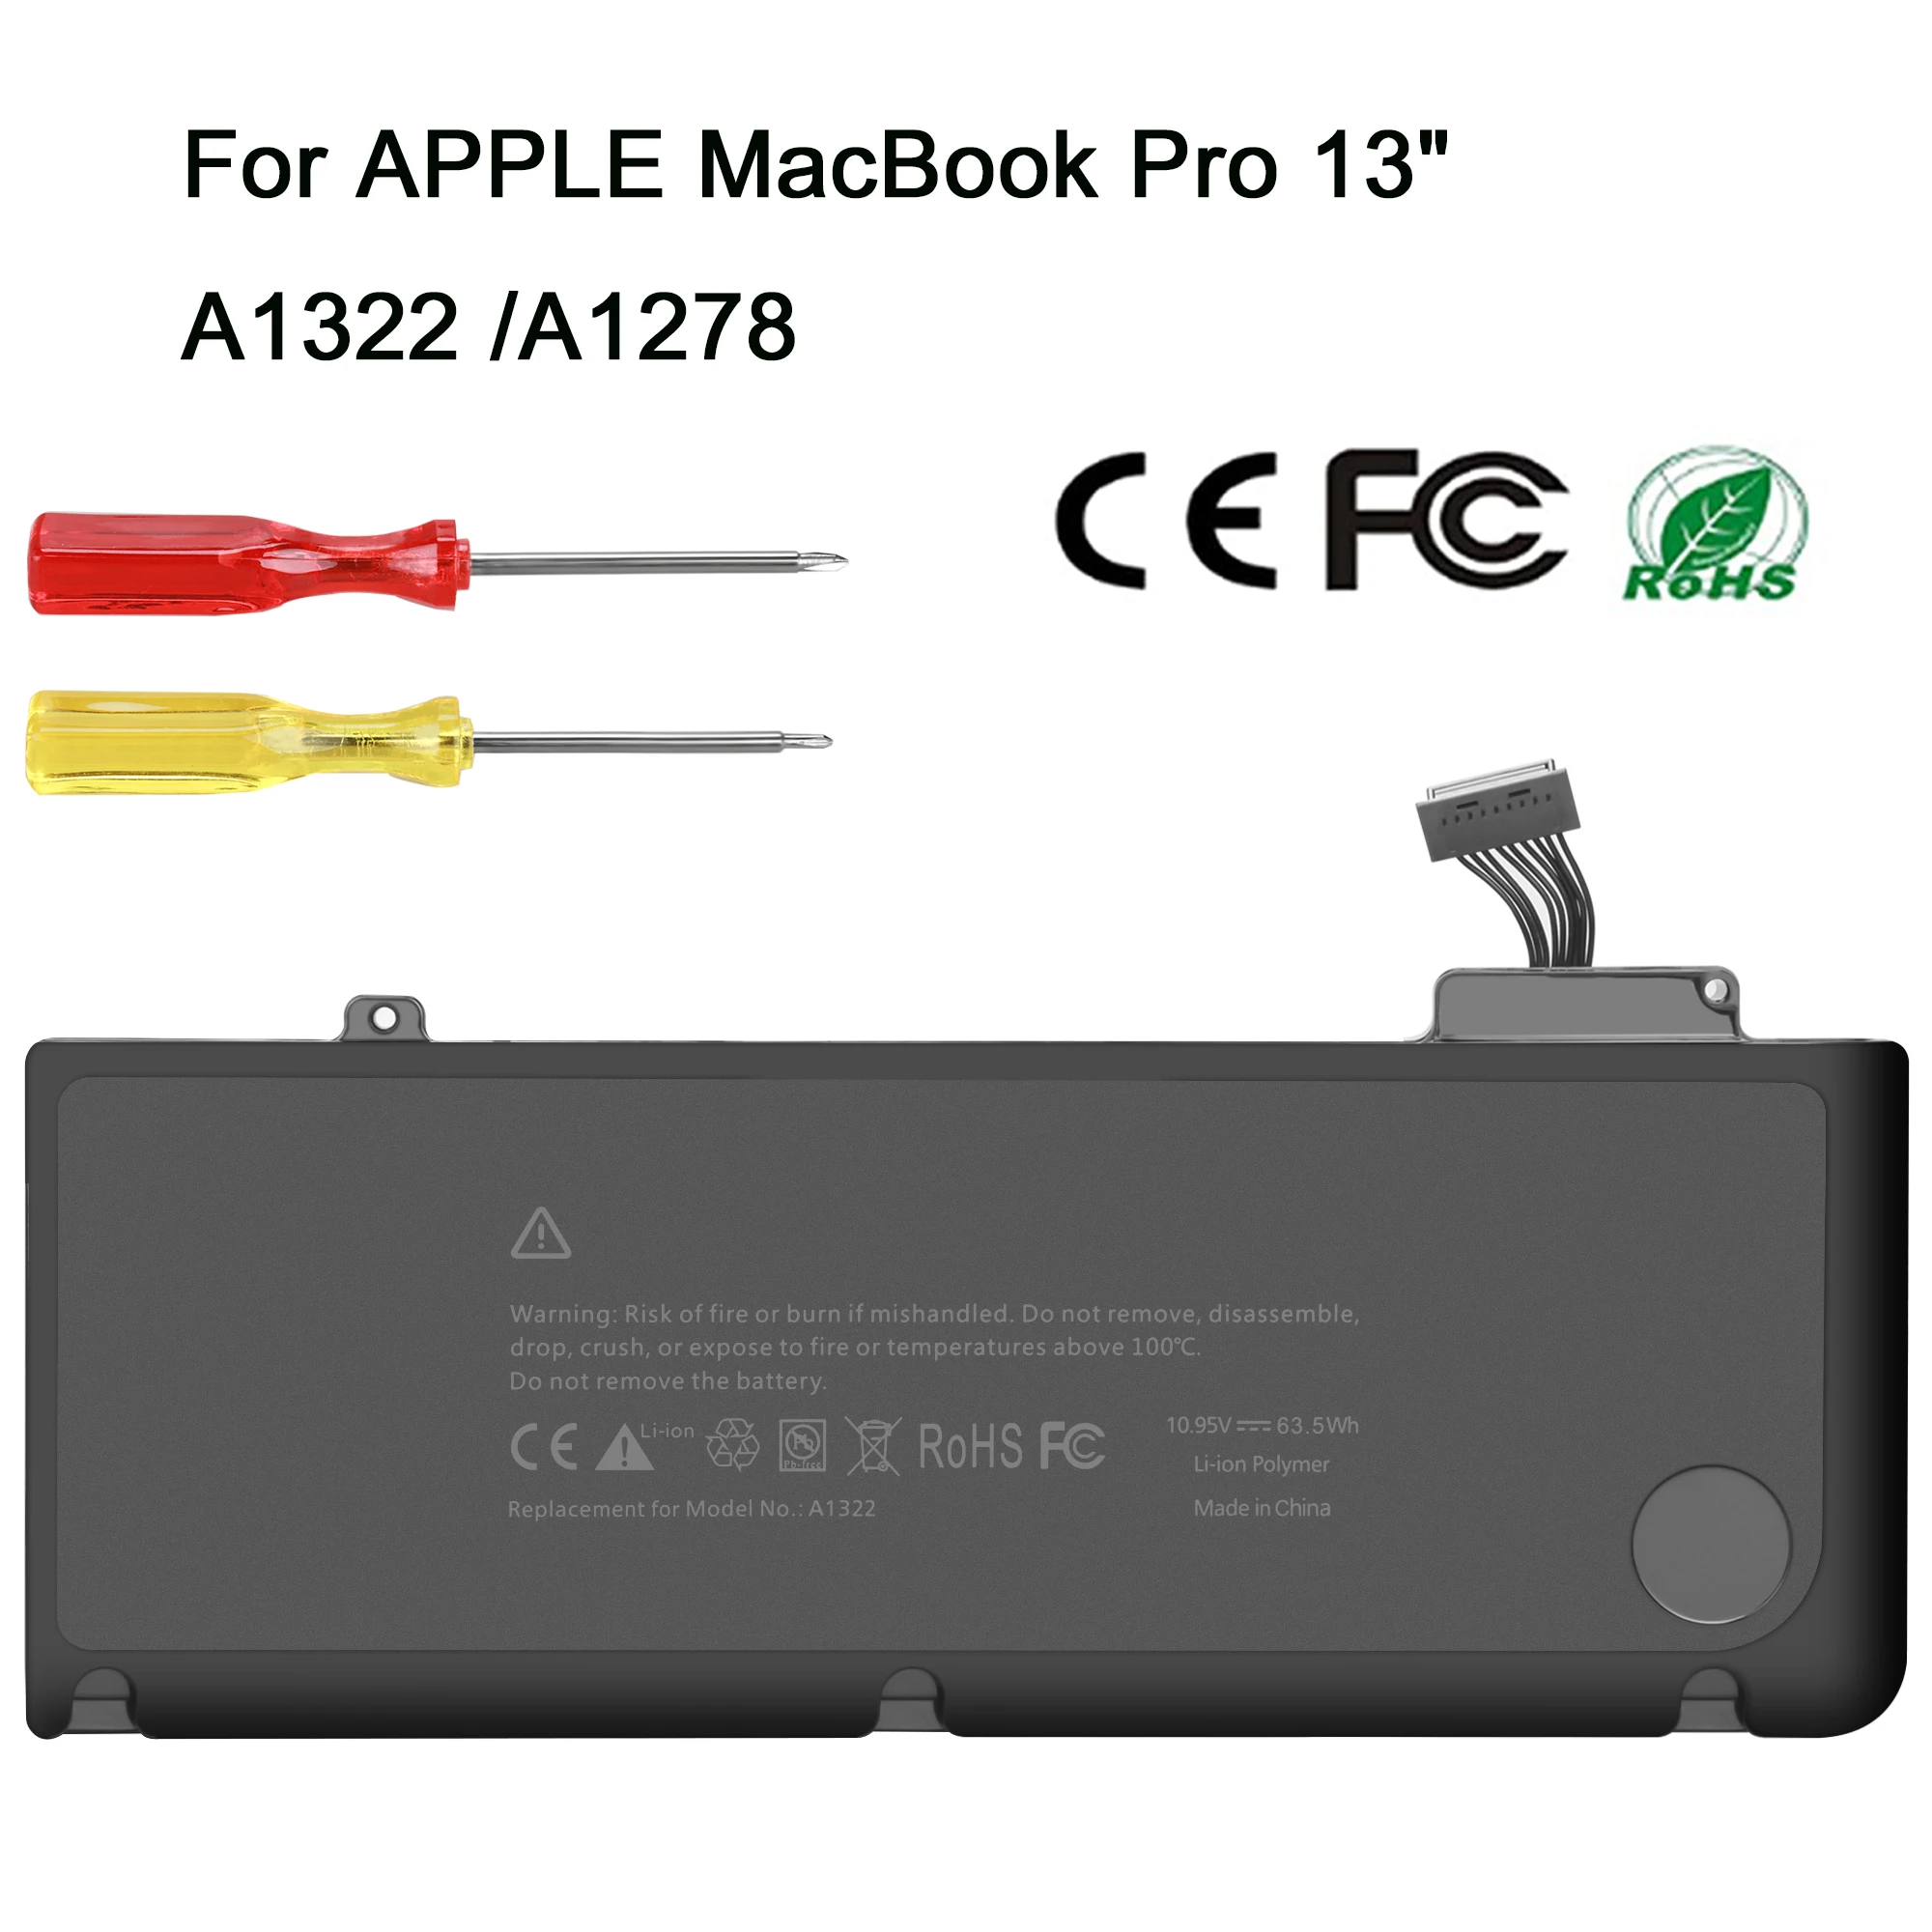 

10.95V 63.5Wh A1322 A1278 Battery for Apple MacBook Pro 13" 2009 2010 2011 MB991LL/A MB990LL/A MB990J/A MC700 MC724